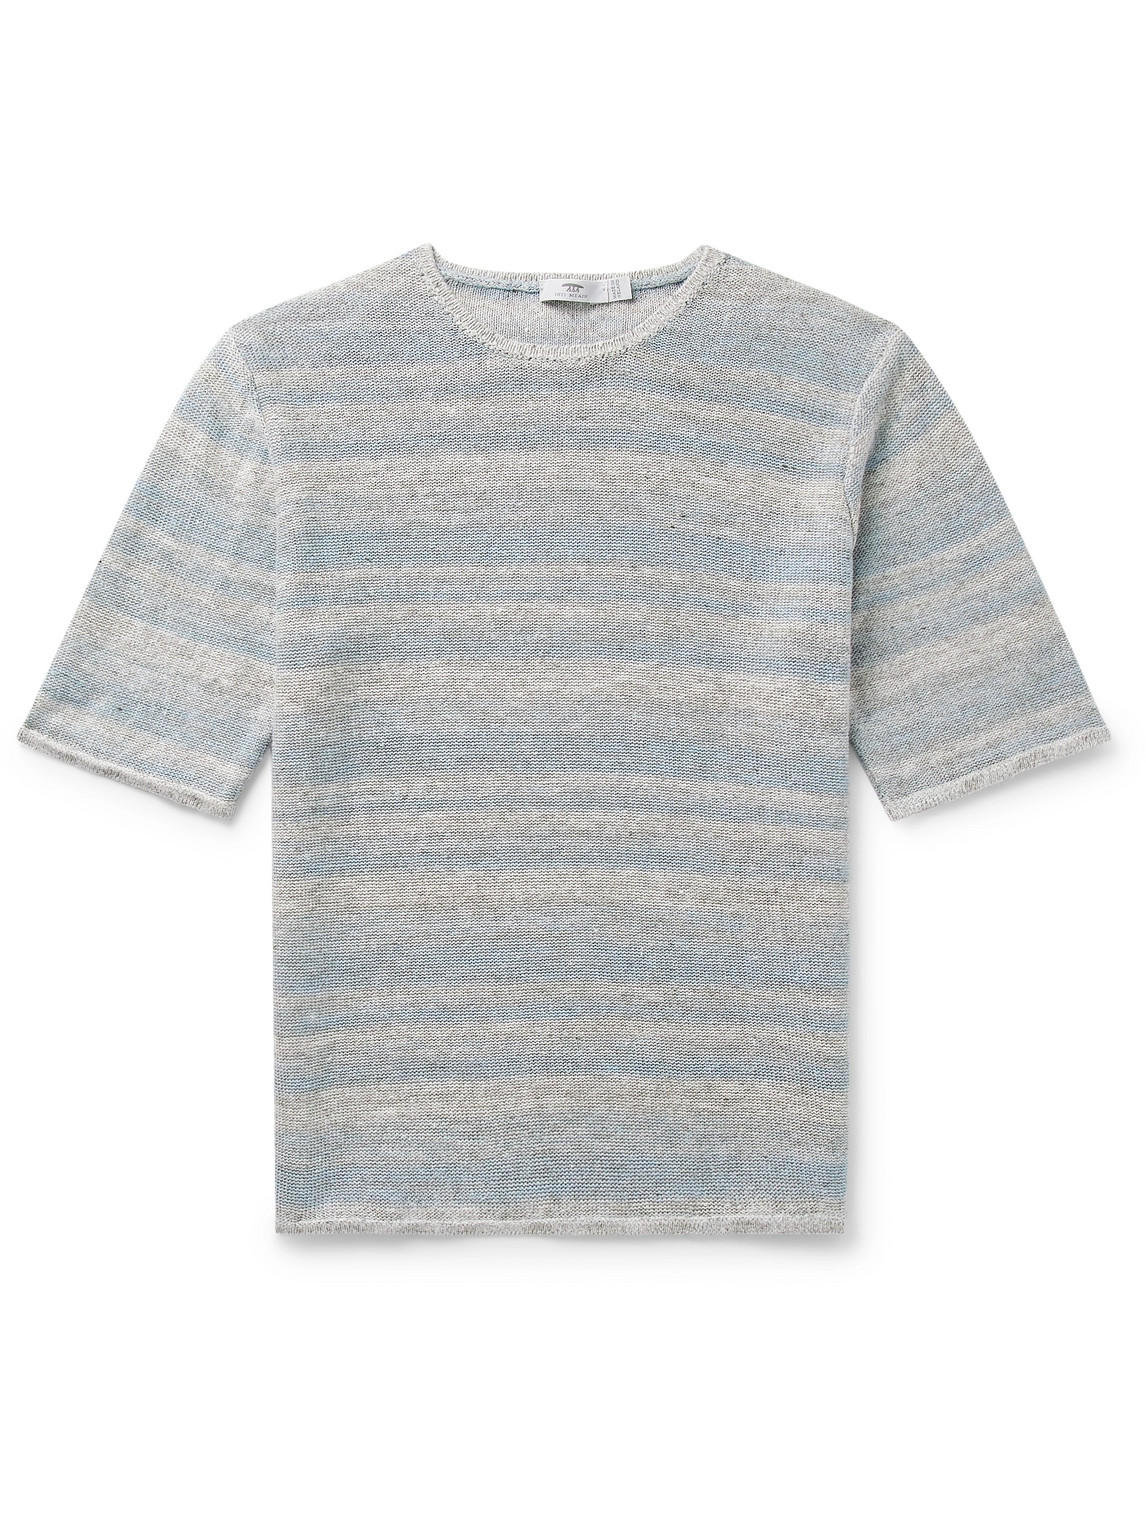 Inis Meáin Striped Linen T-Shirt